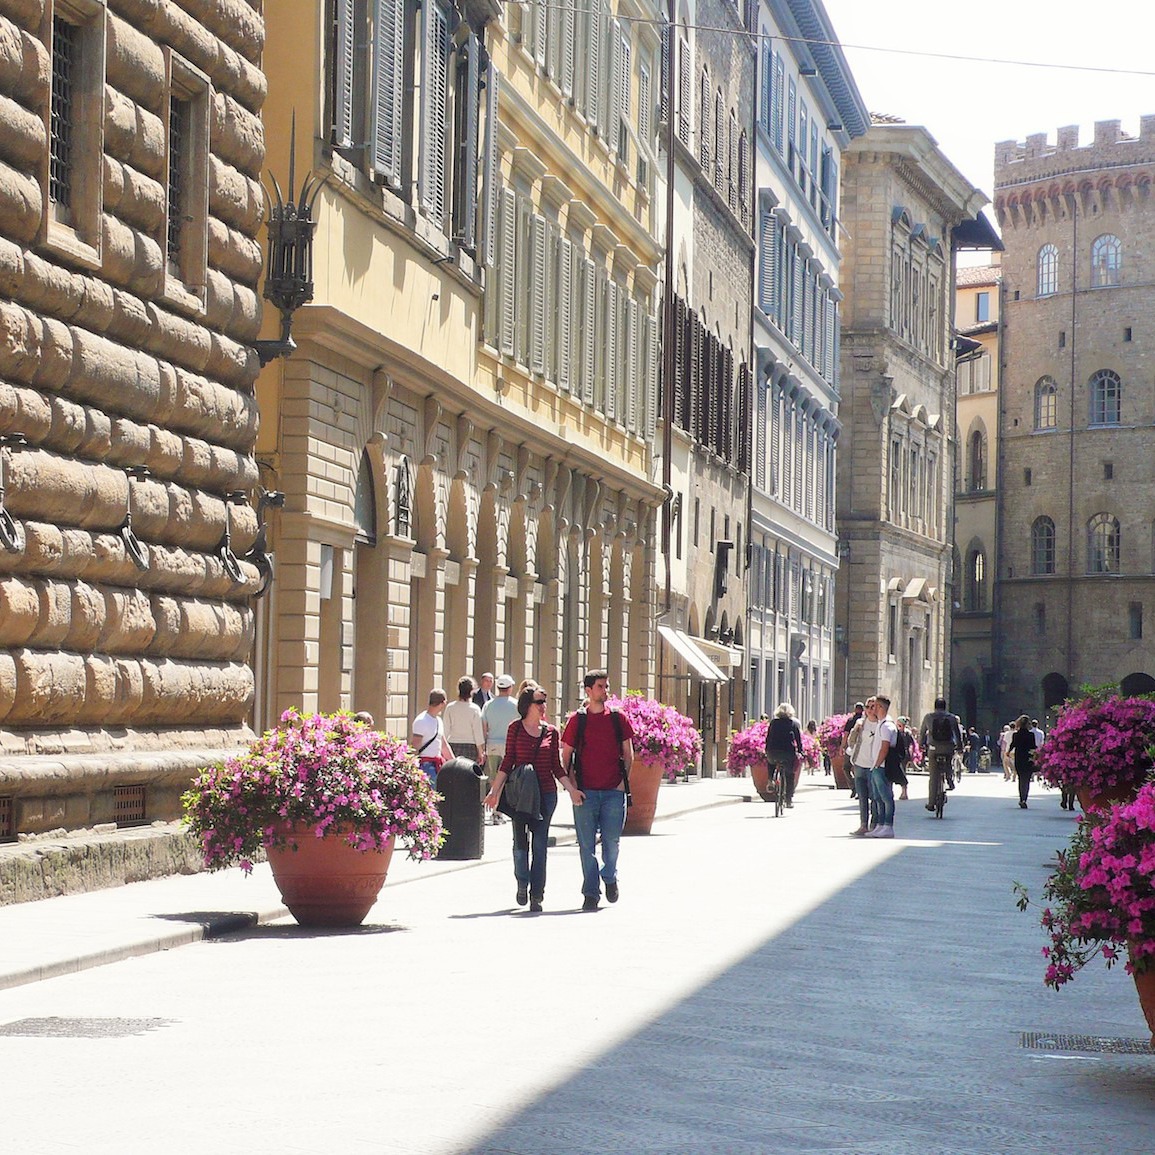 Firenze per disabili - Museo a cielo aperto